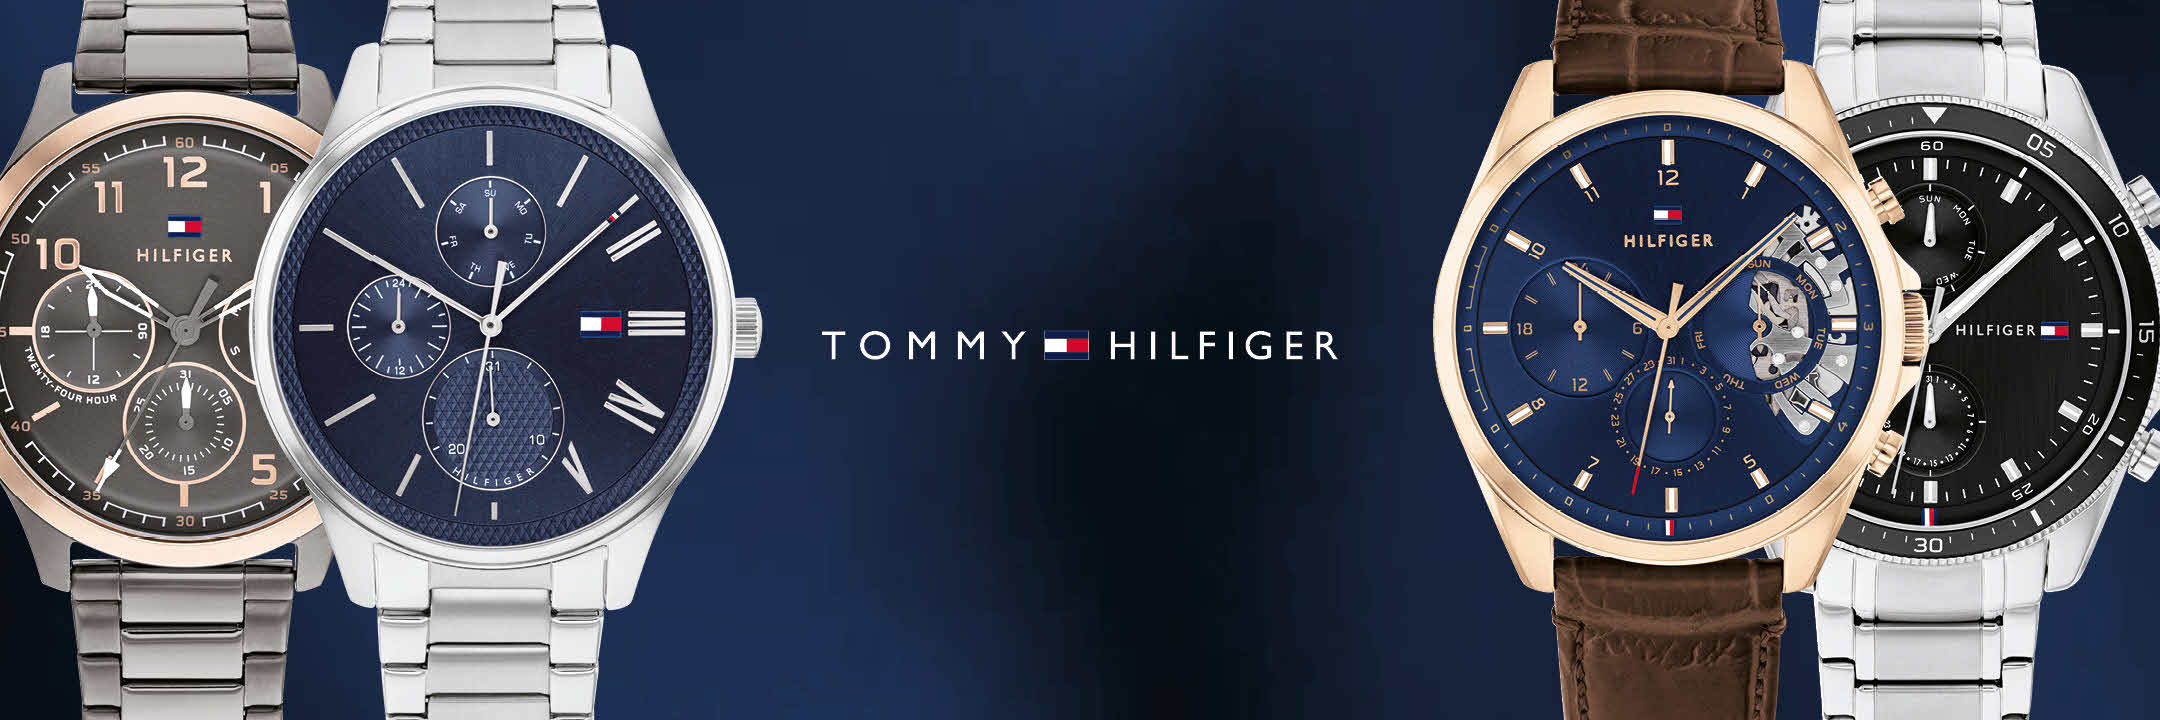 Tommy Hilfiger para hombre